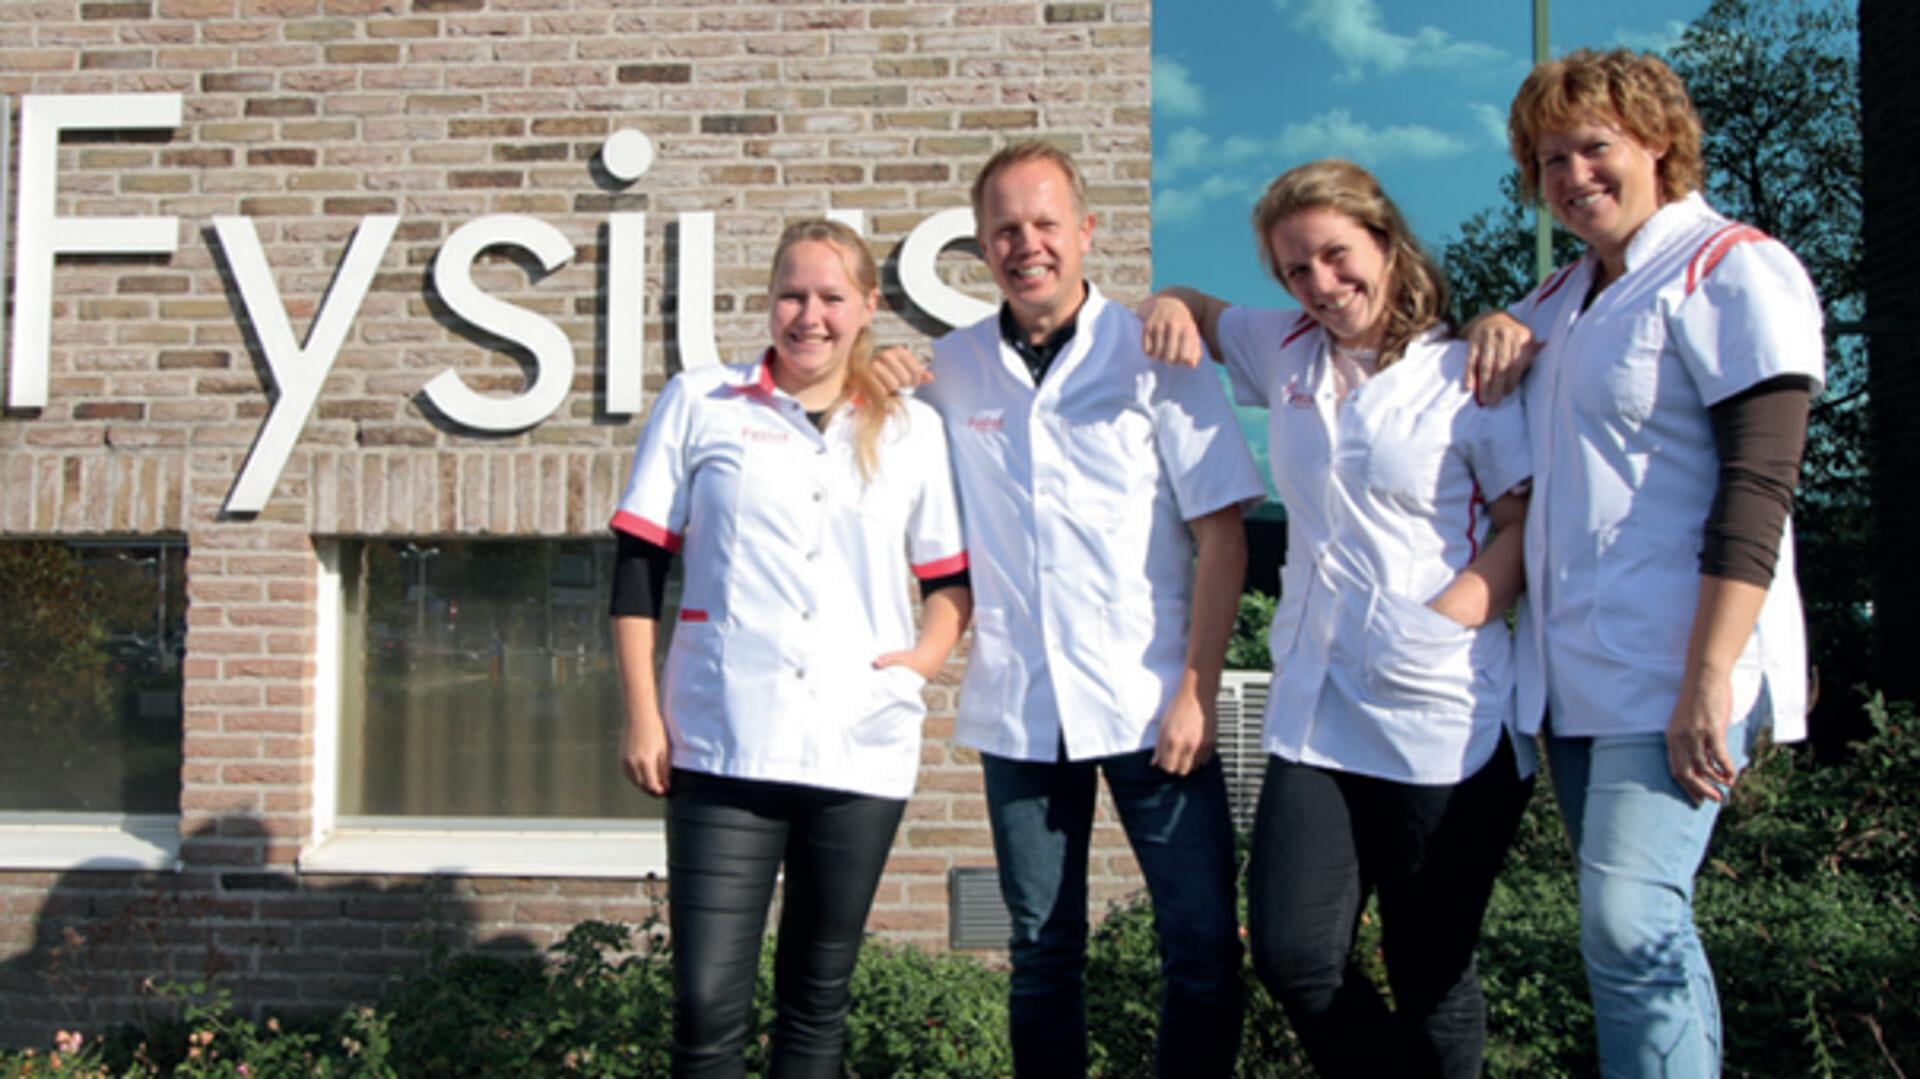 Team Fysius Winterswijk met van links naar rechts: Iris, Jasper,
Bianca en Hedwig.